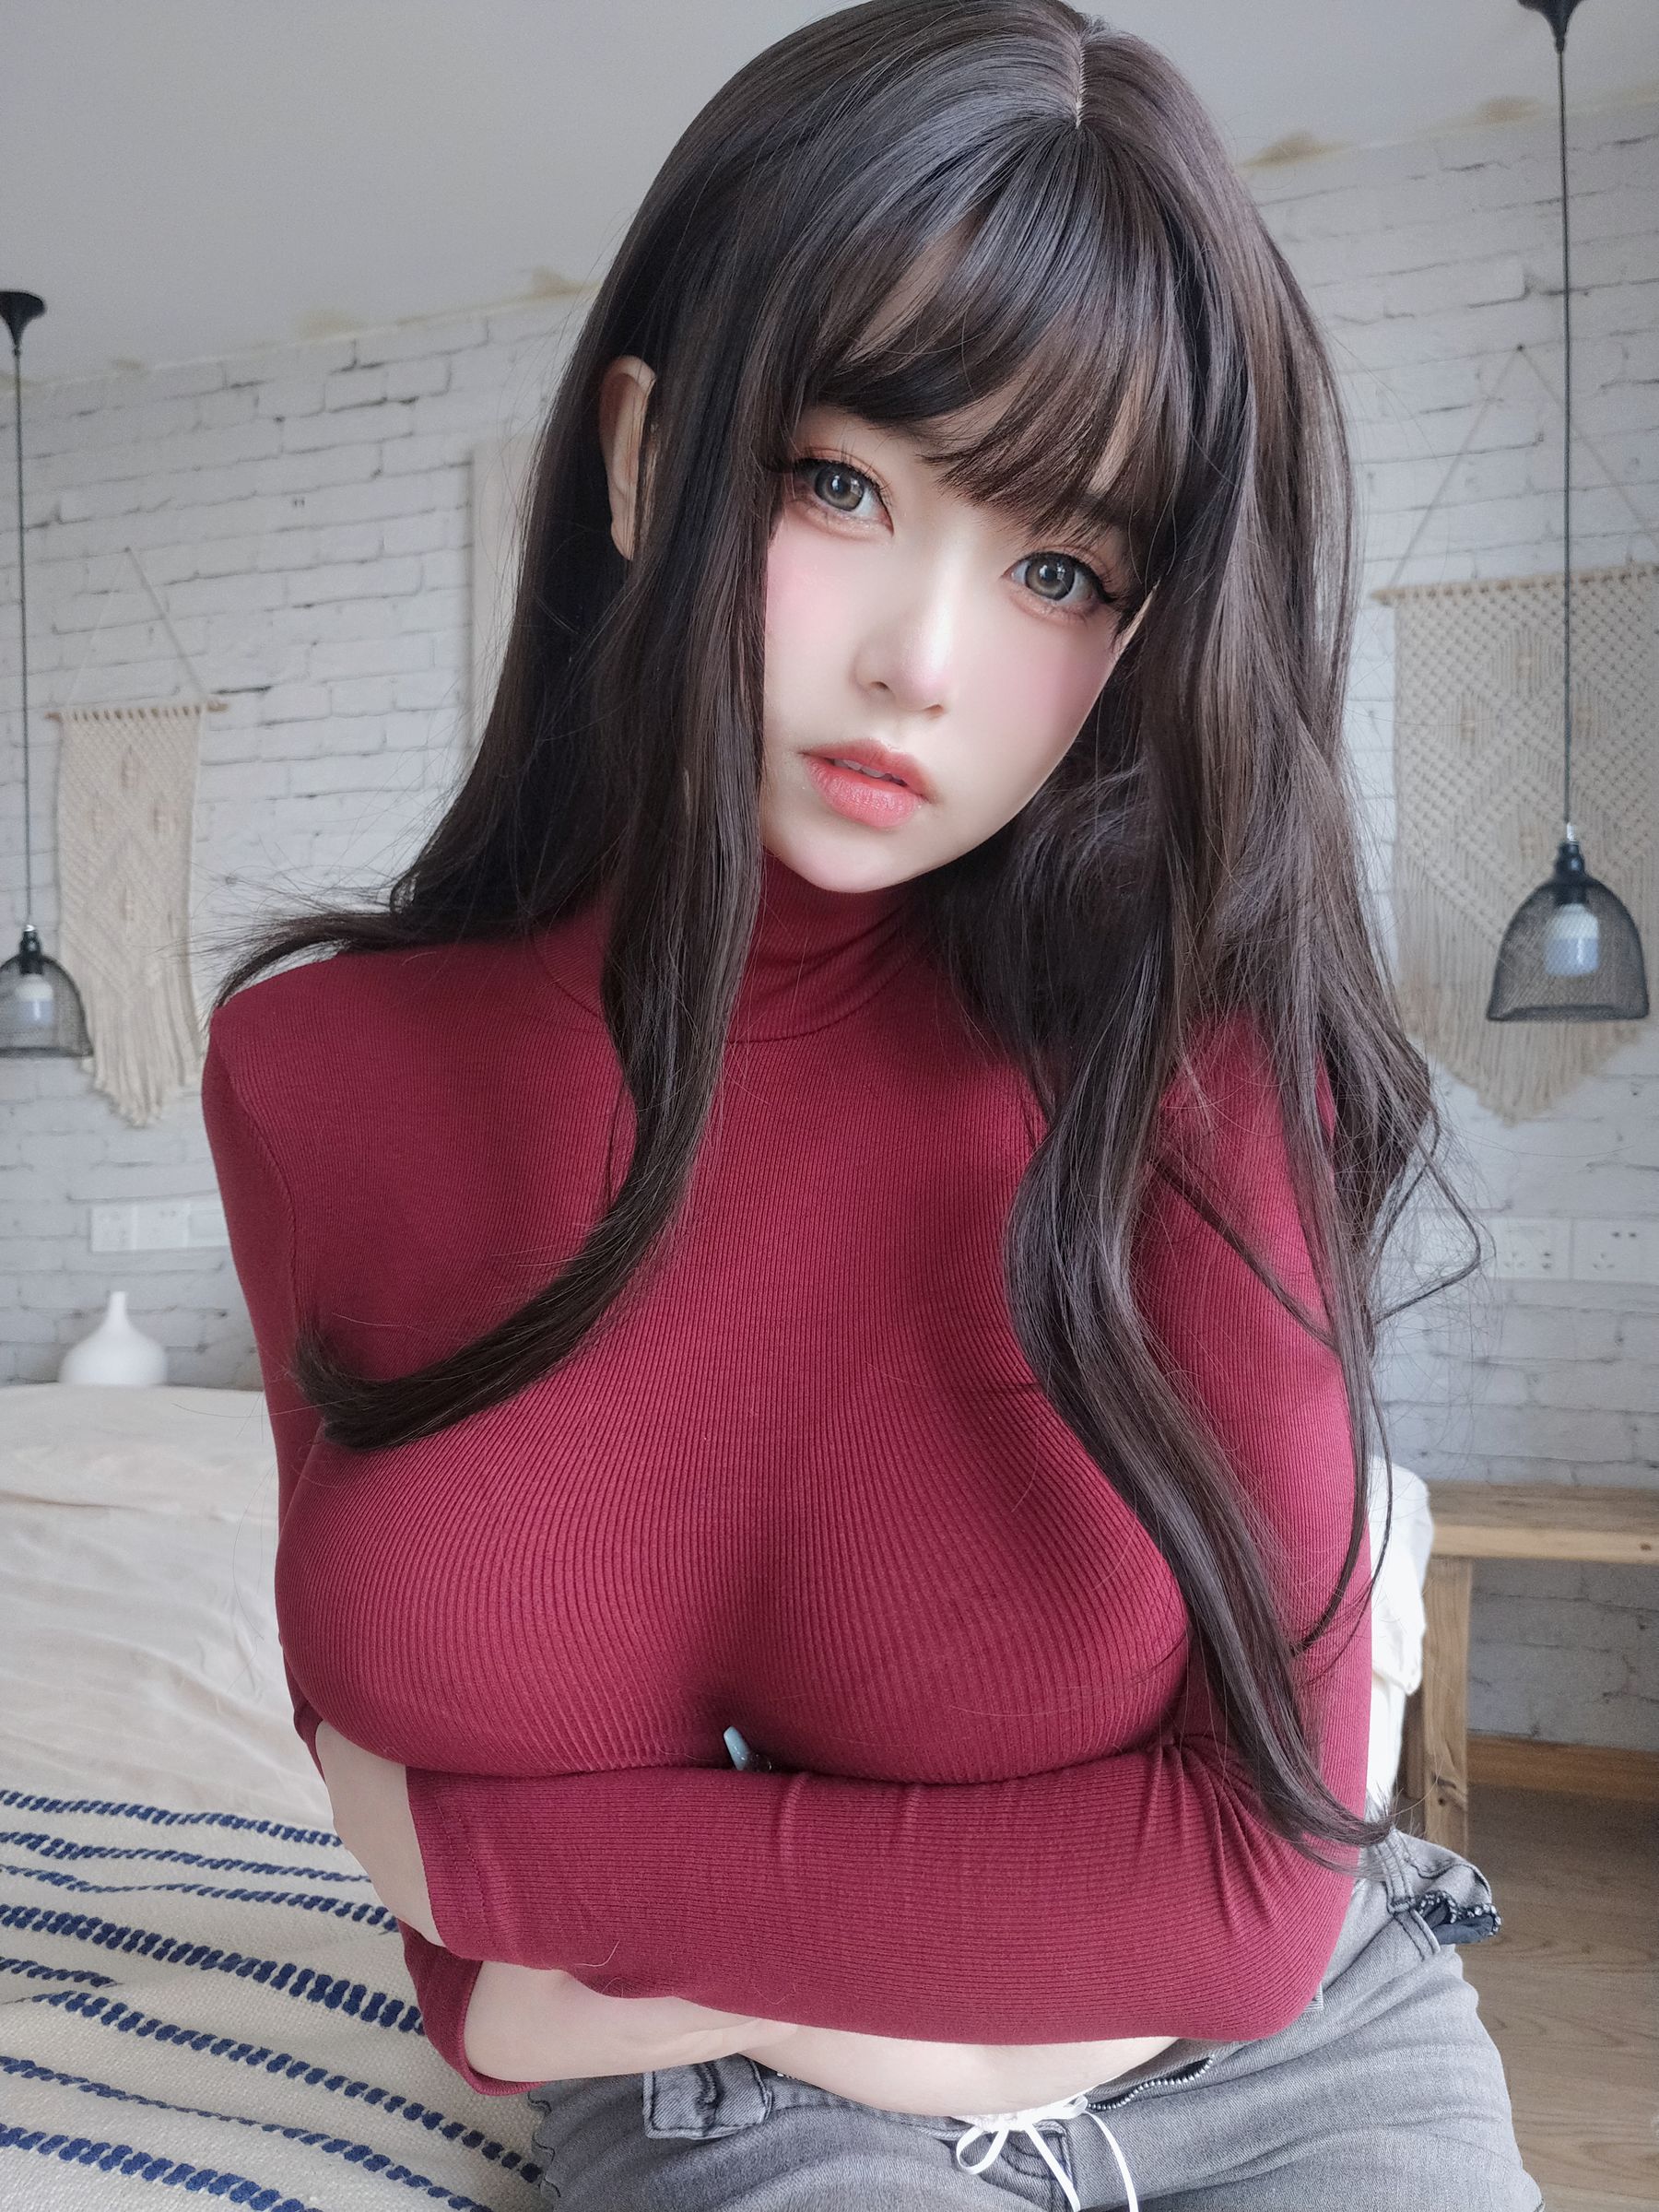 [福利COS] 女主K - 红色毛衣的丰满妹妹/(103P)